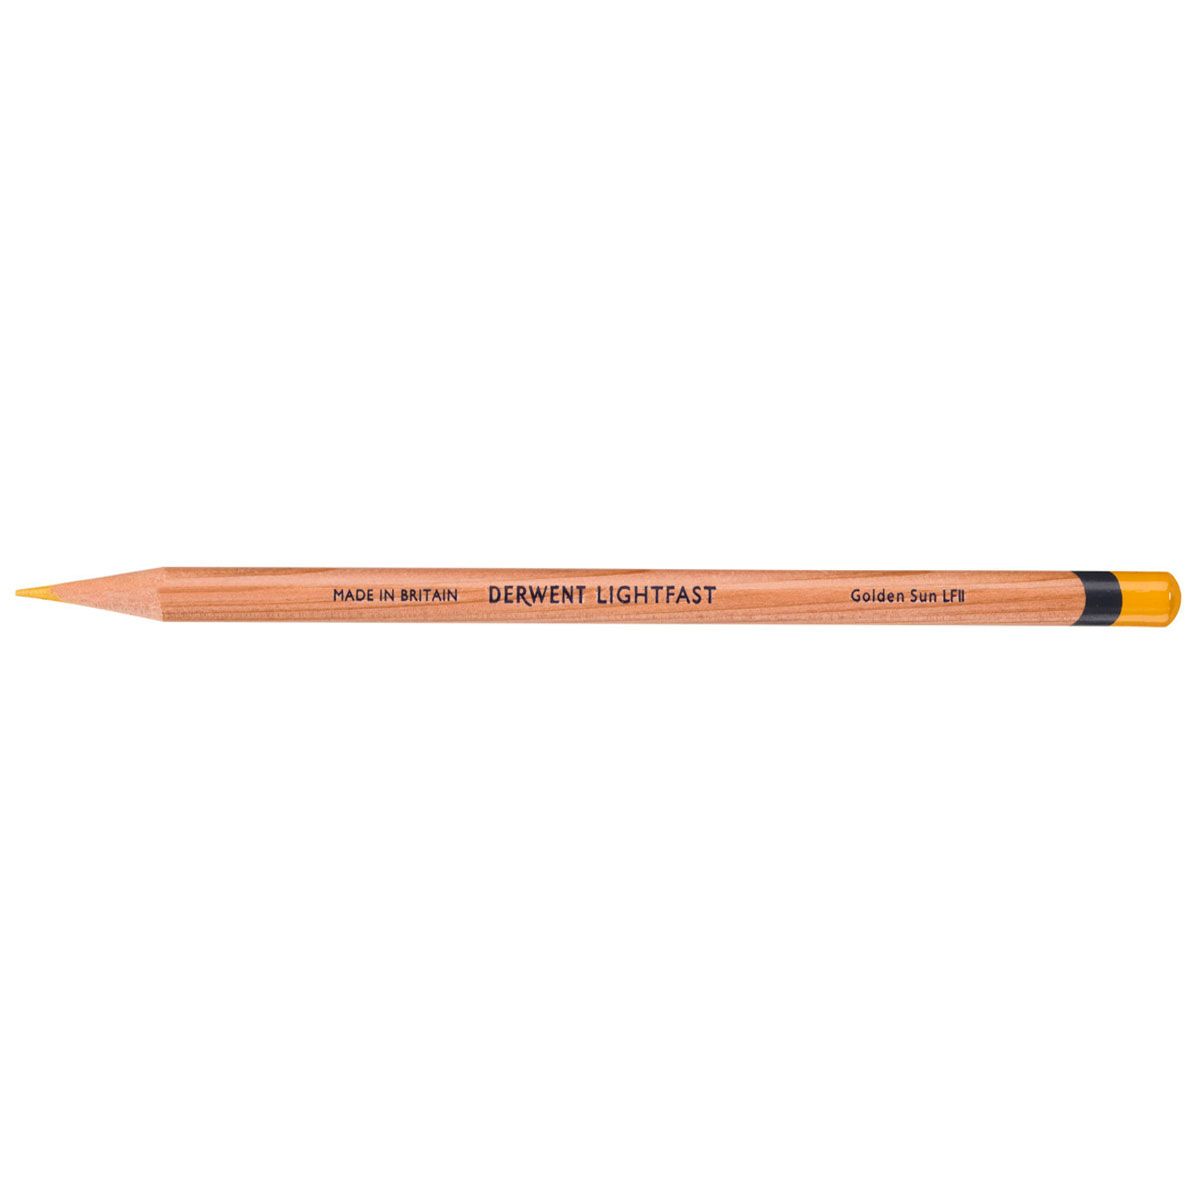 NEW Derwent Lightfast Pencil Colour: Golden Sun